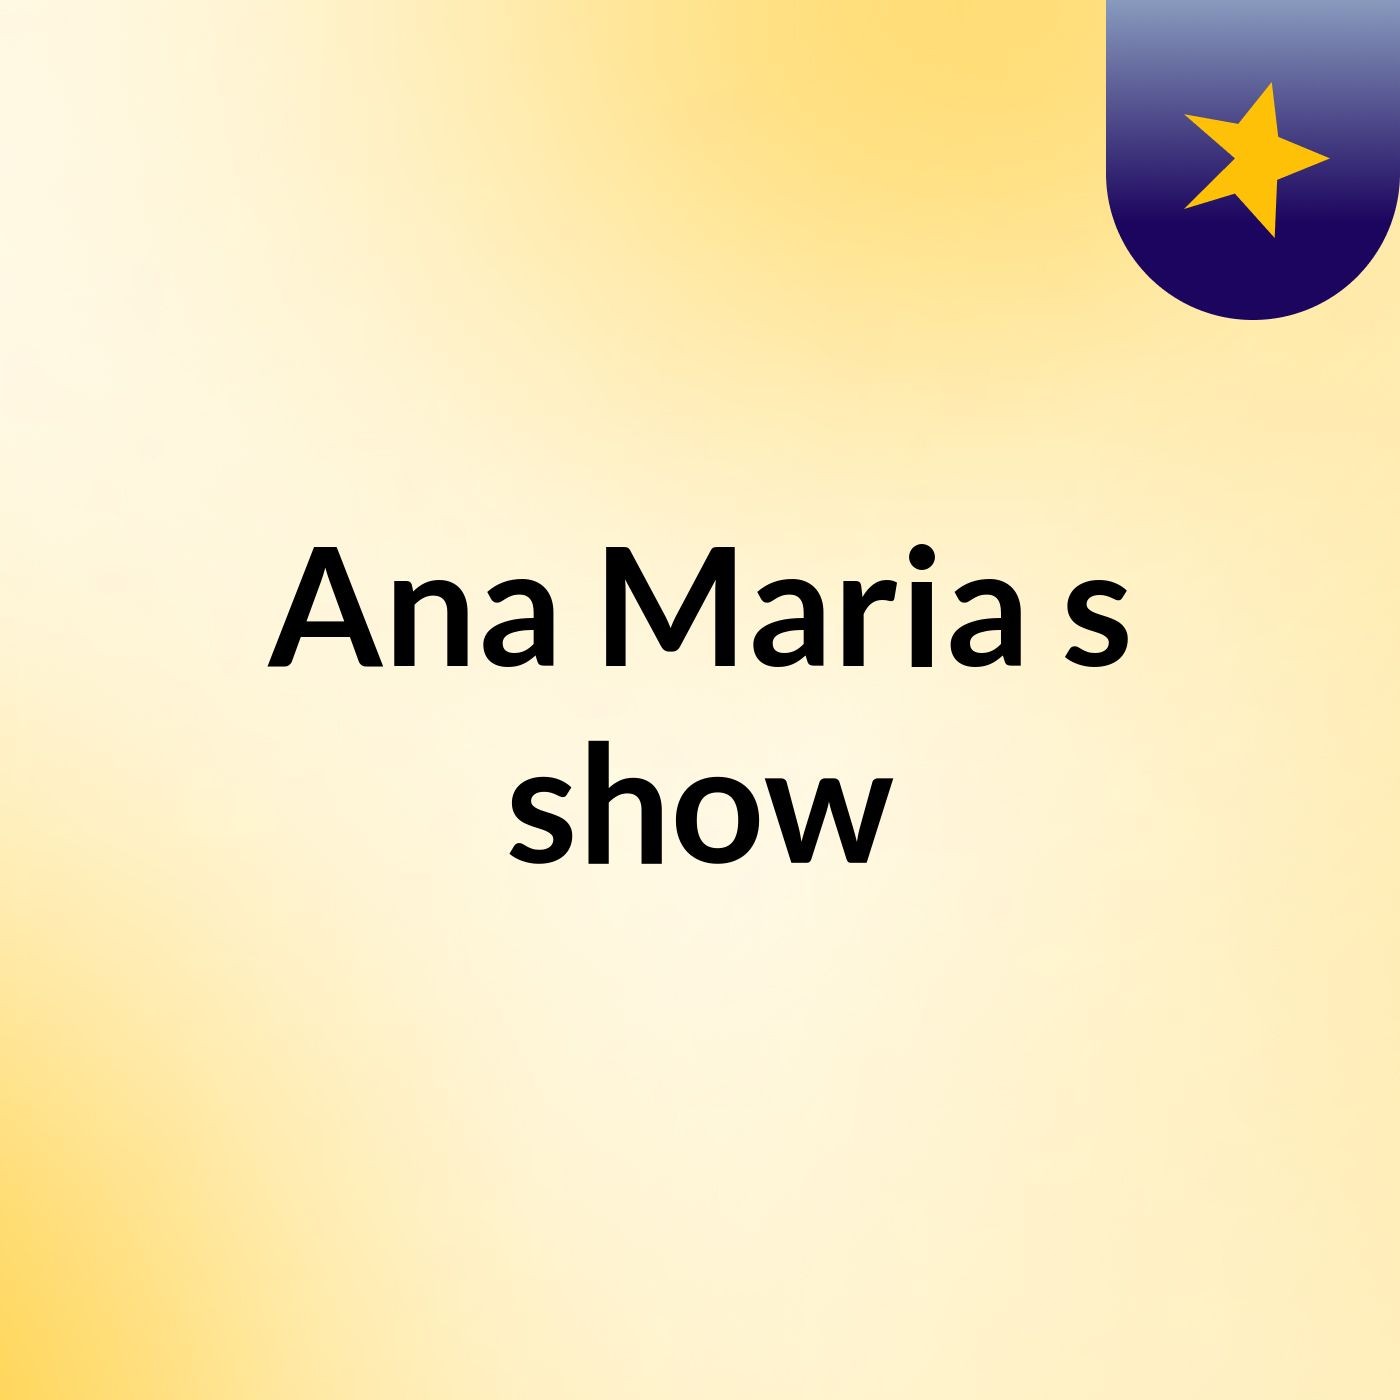 Ana Maria's show